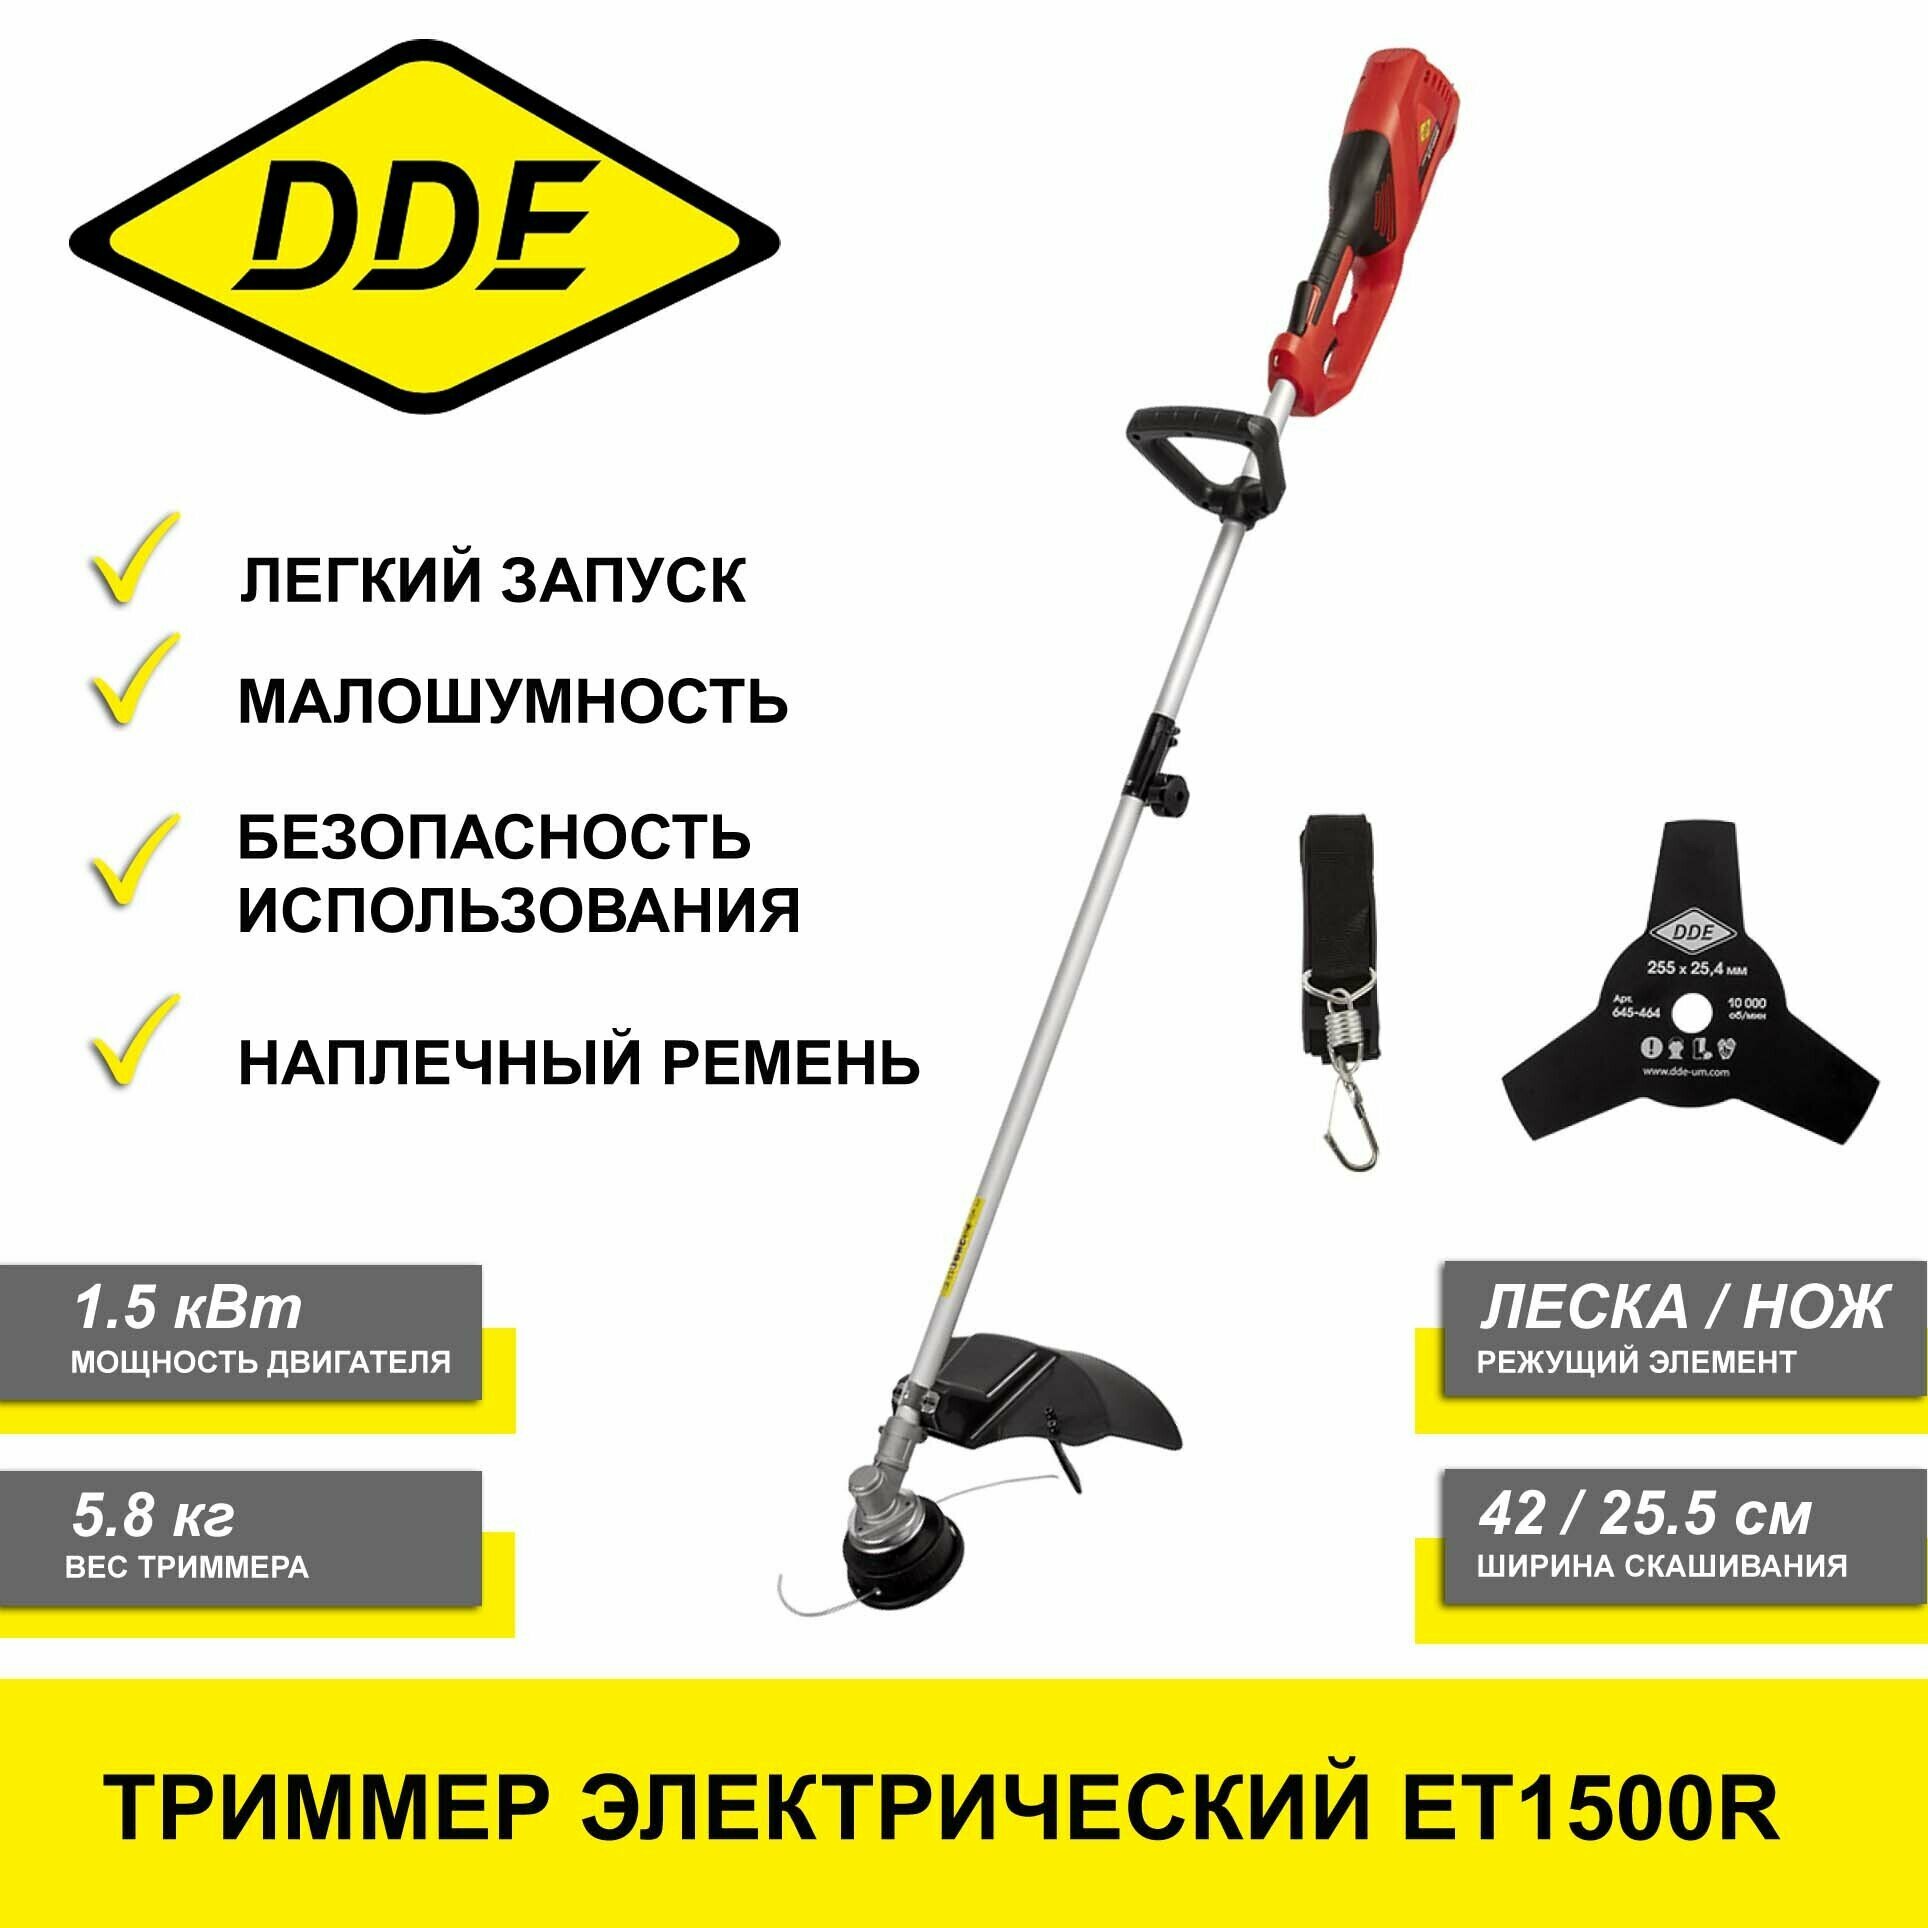 Электрический триммер DDE ЕТ1500R (1.5кВт, леска/нож, ширина скашивания 42/25.5см, 8000об/мин)